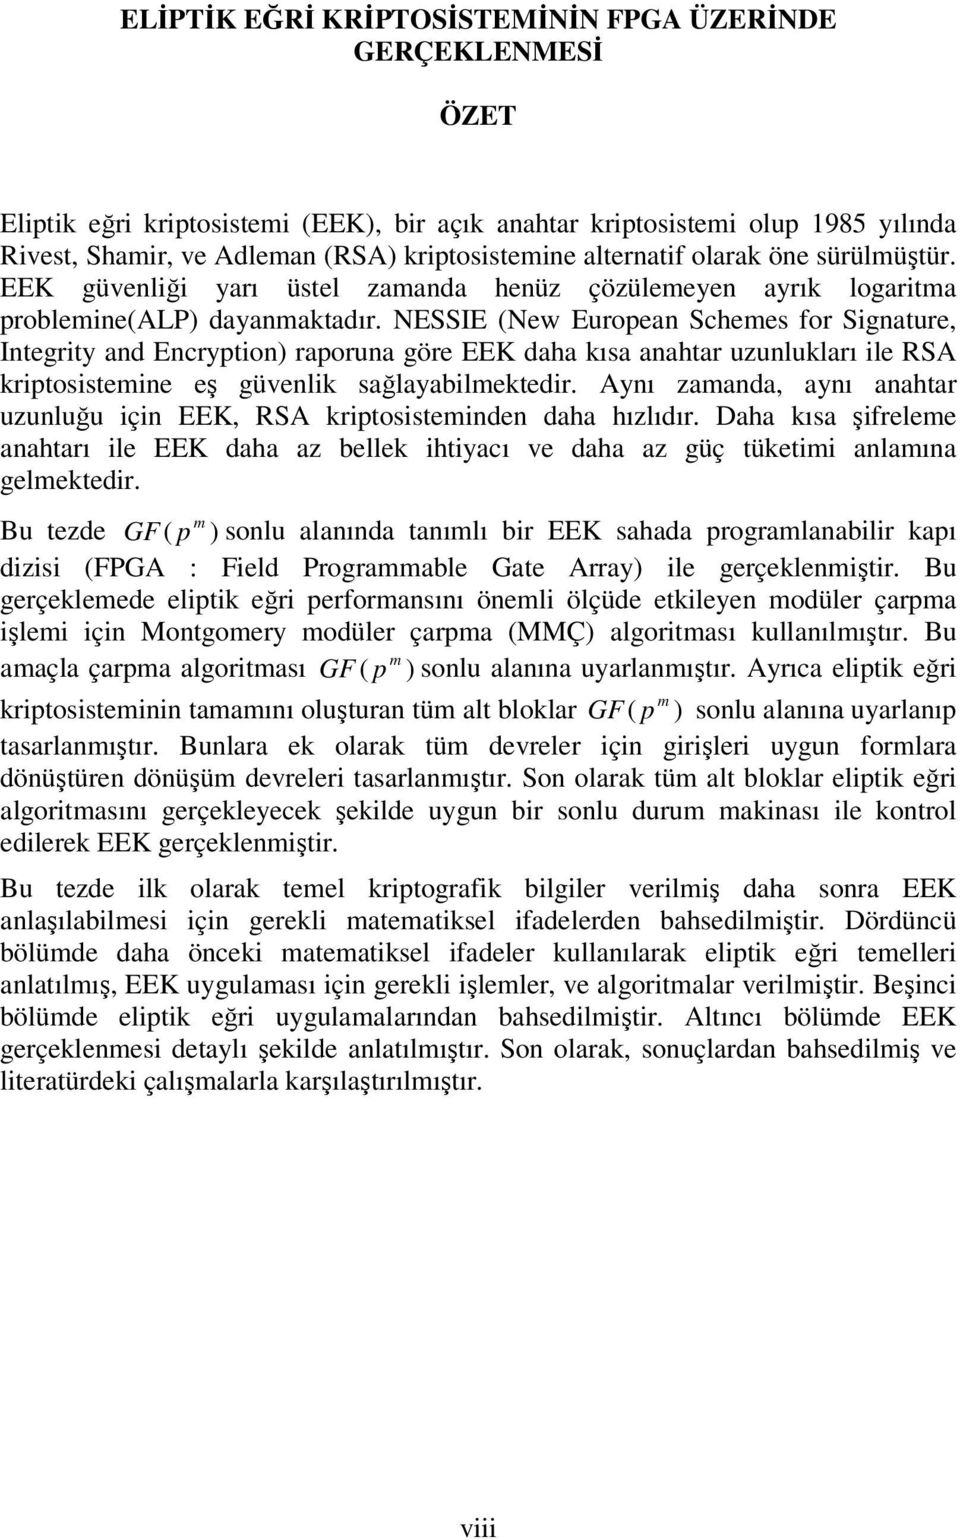 NESSIE (New Europen Schees for Signture Integrit nd Encrption rporun göre EEK dh kıs nhtr uzunluklrı ile RSA kriptosisteine eş güvenlik sğlbilektedir.